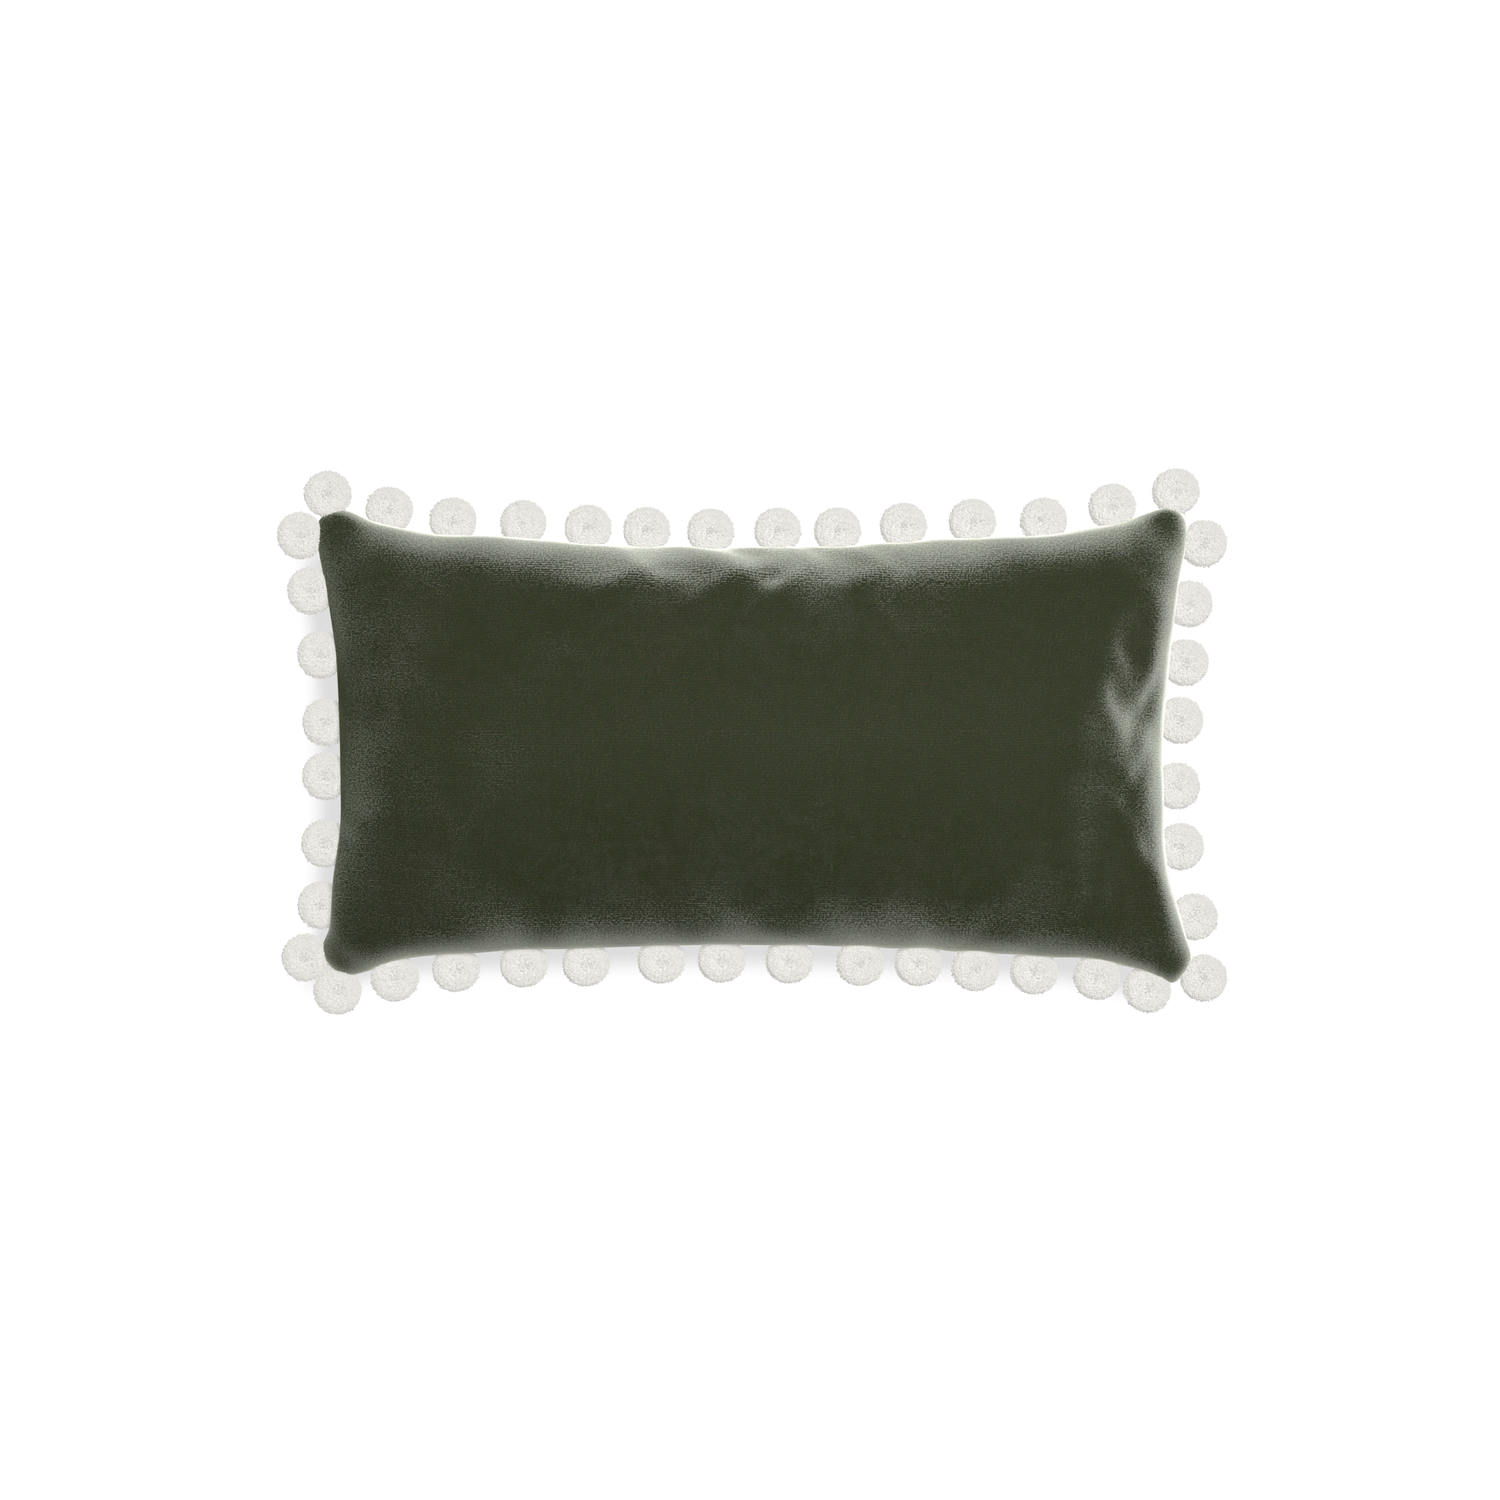 rectangle fern green velvet pillow with white pom poms